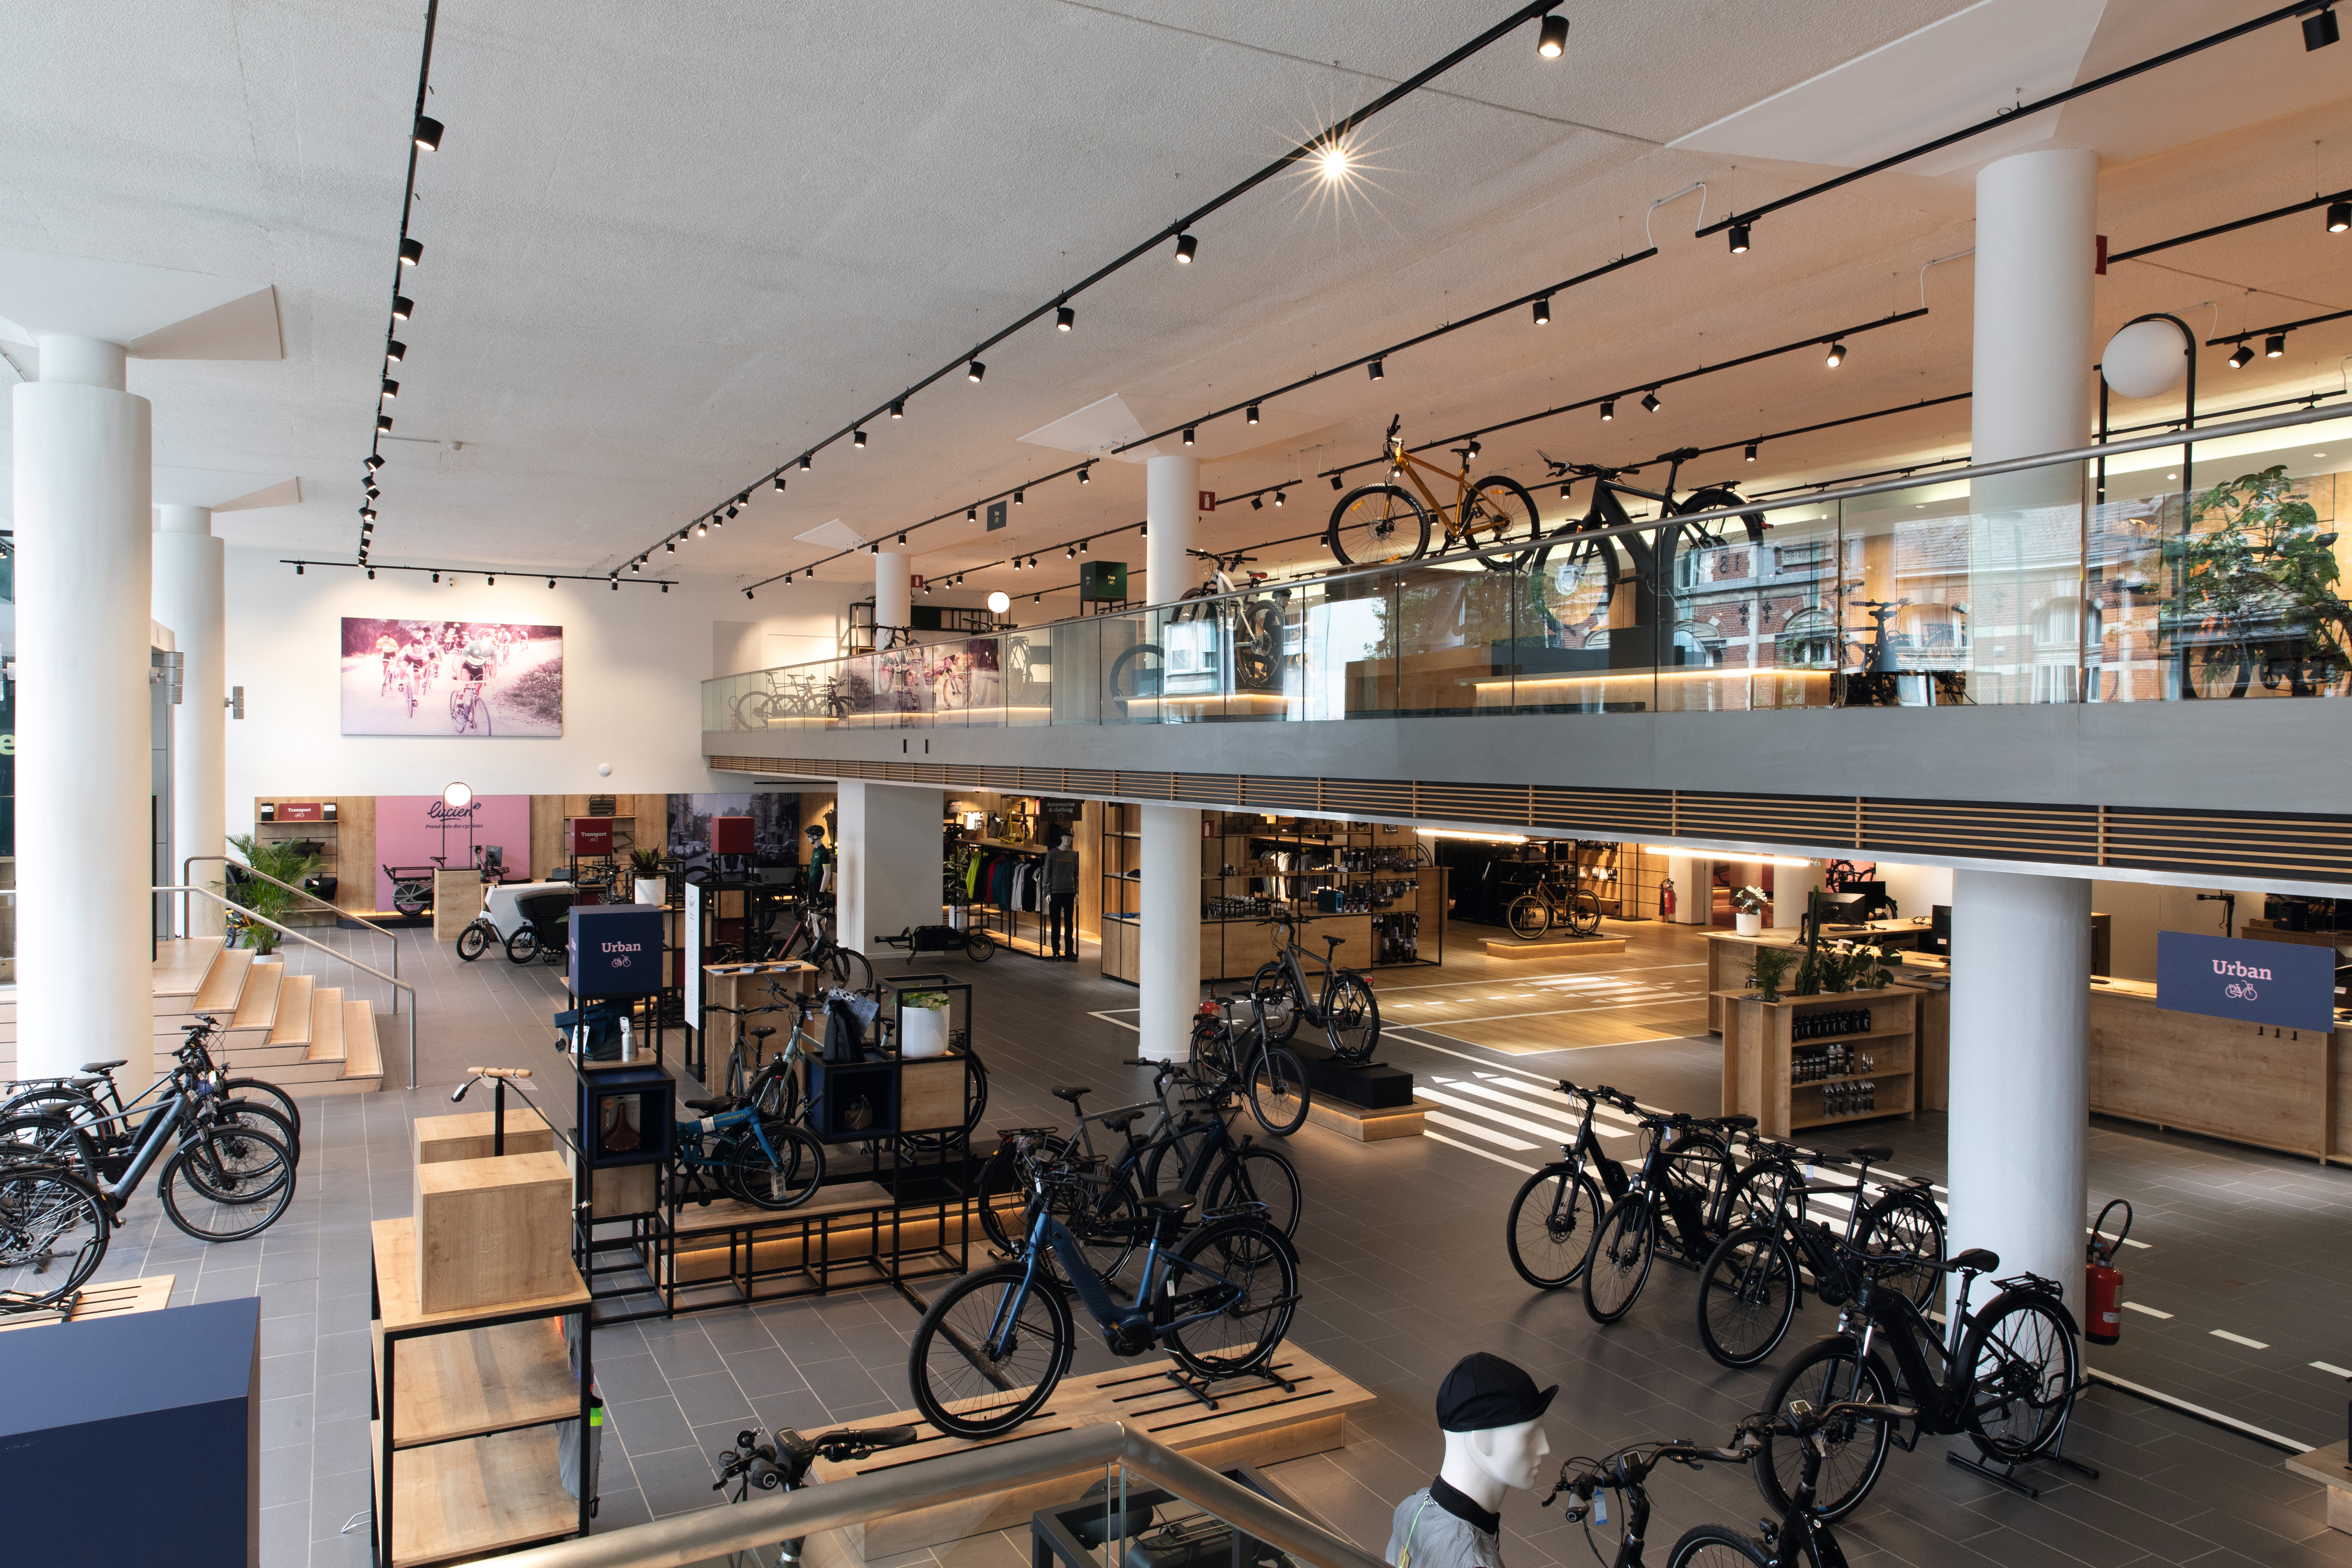 Il negozio è su due piani e offre un’ampia gamma di biciclette.